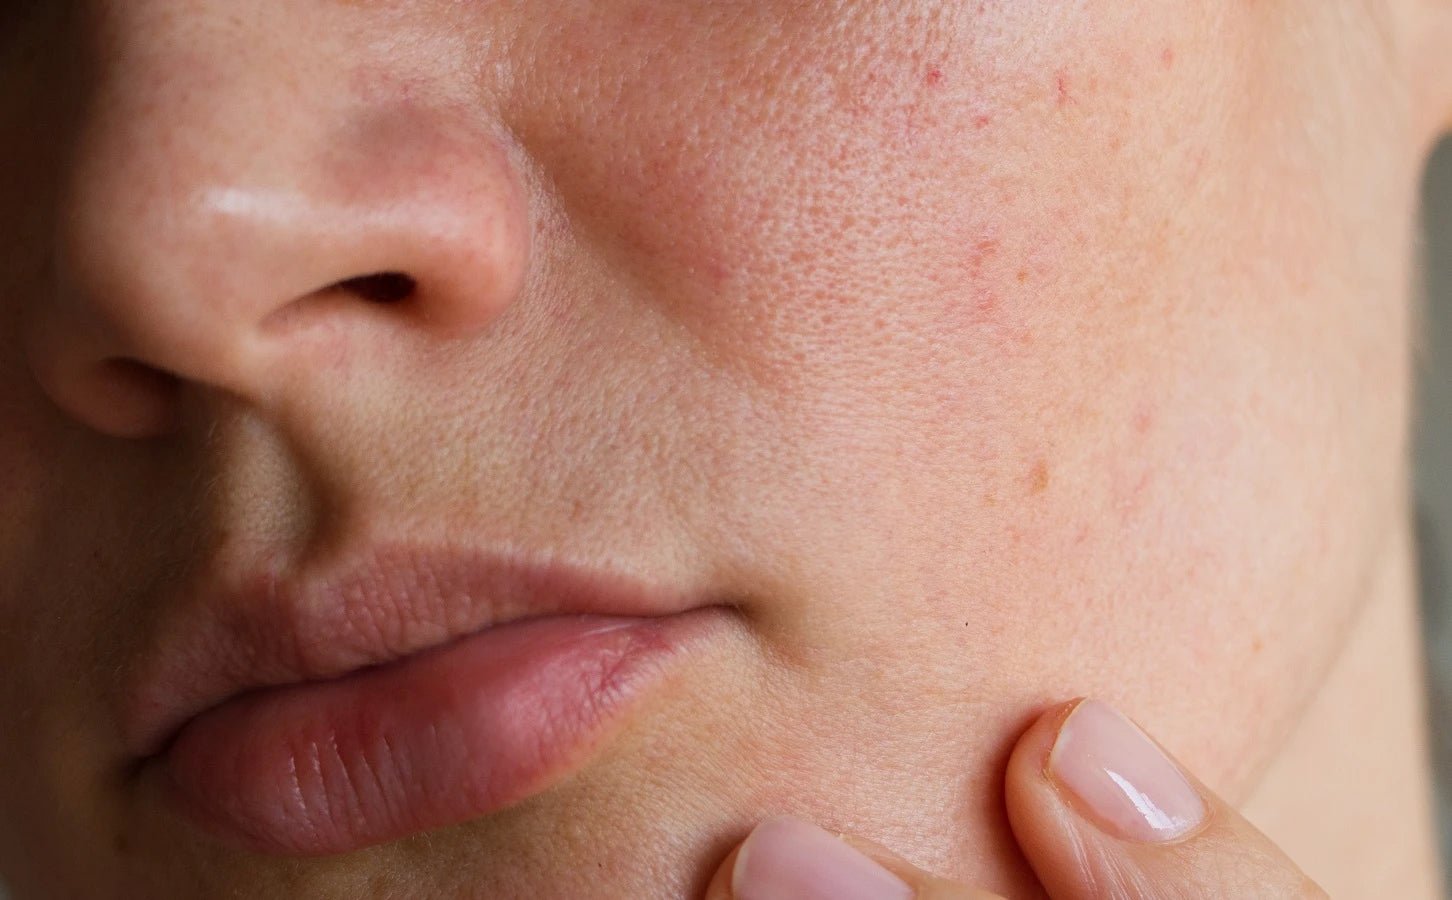 Pellicules sur un seul côté du visage - Prendre soin de sa peau